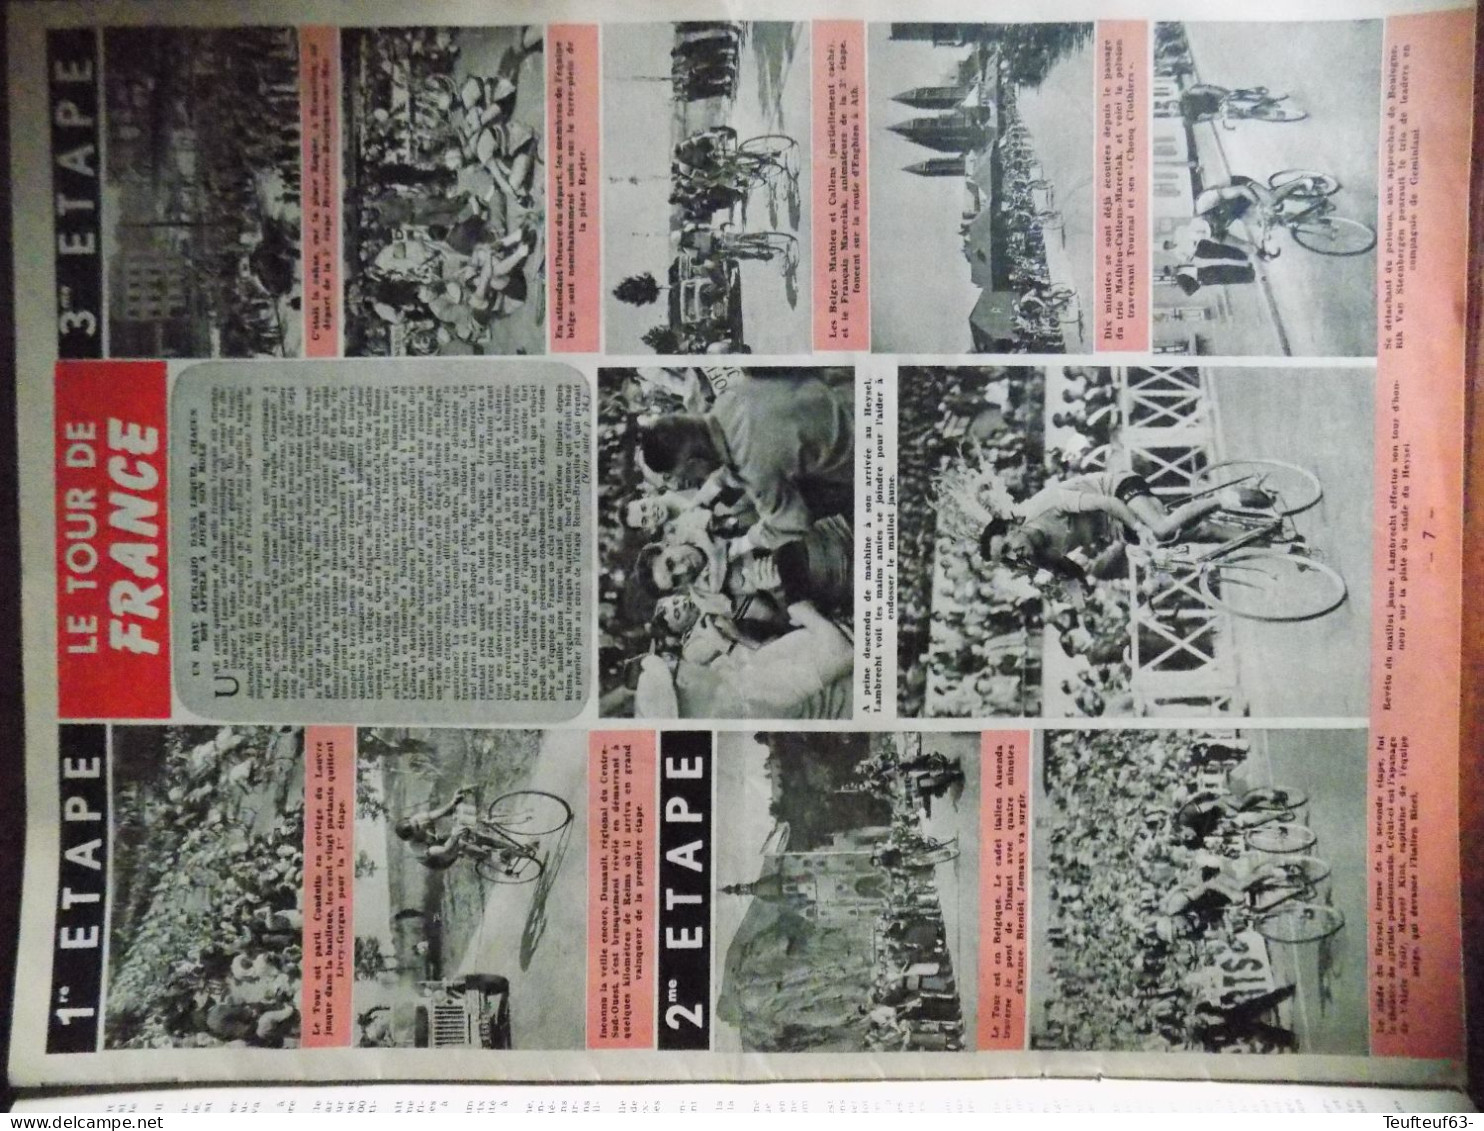 Le Soir Illustré N° 889 Jean Simmons - Fausto Coppi - Tour De France - La Lesse - Affaire Lafarge - Mao-Tse-Tung... - 1900 - 1949